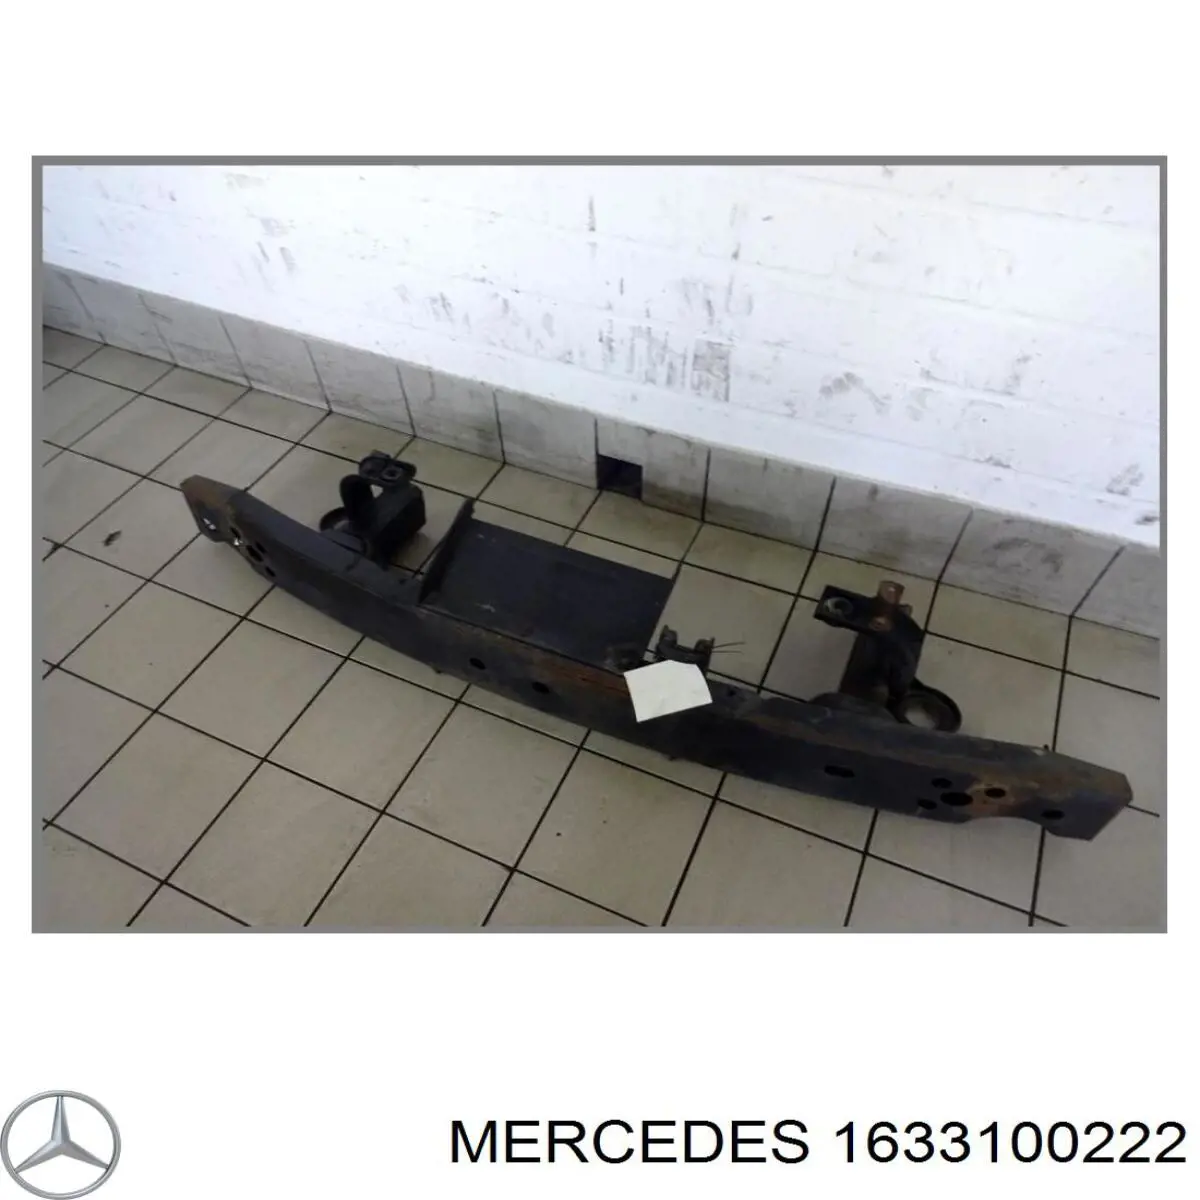 A1633100222 Mercedes refuerzo parachoque delantero